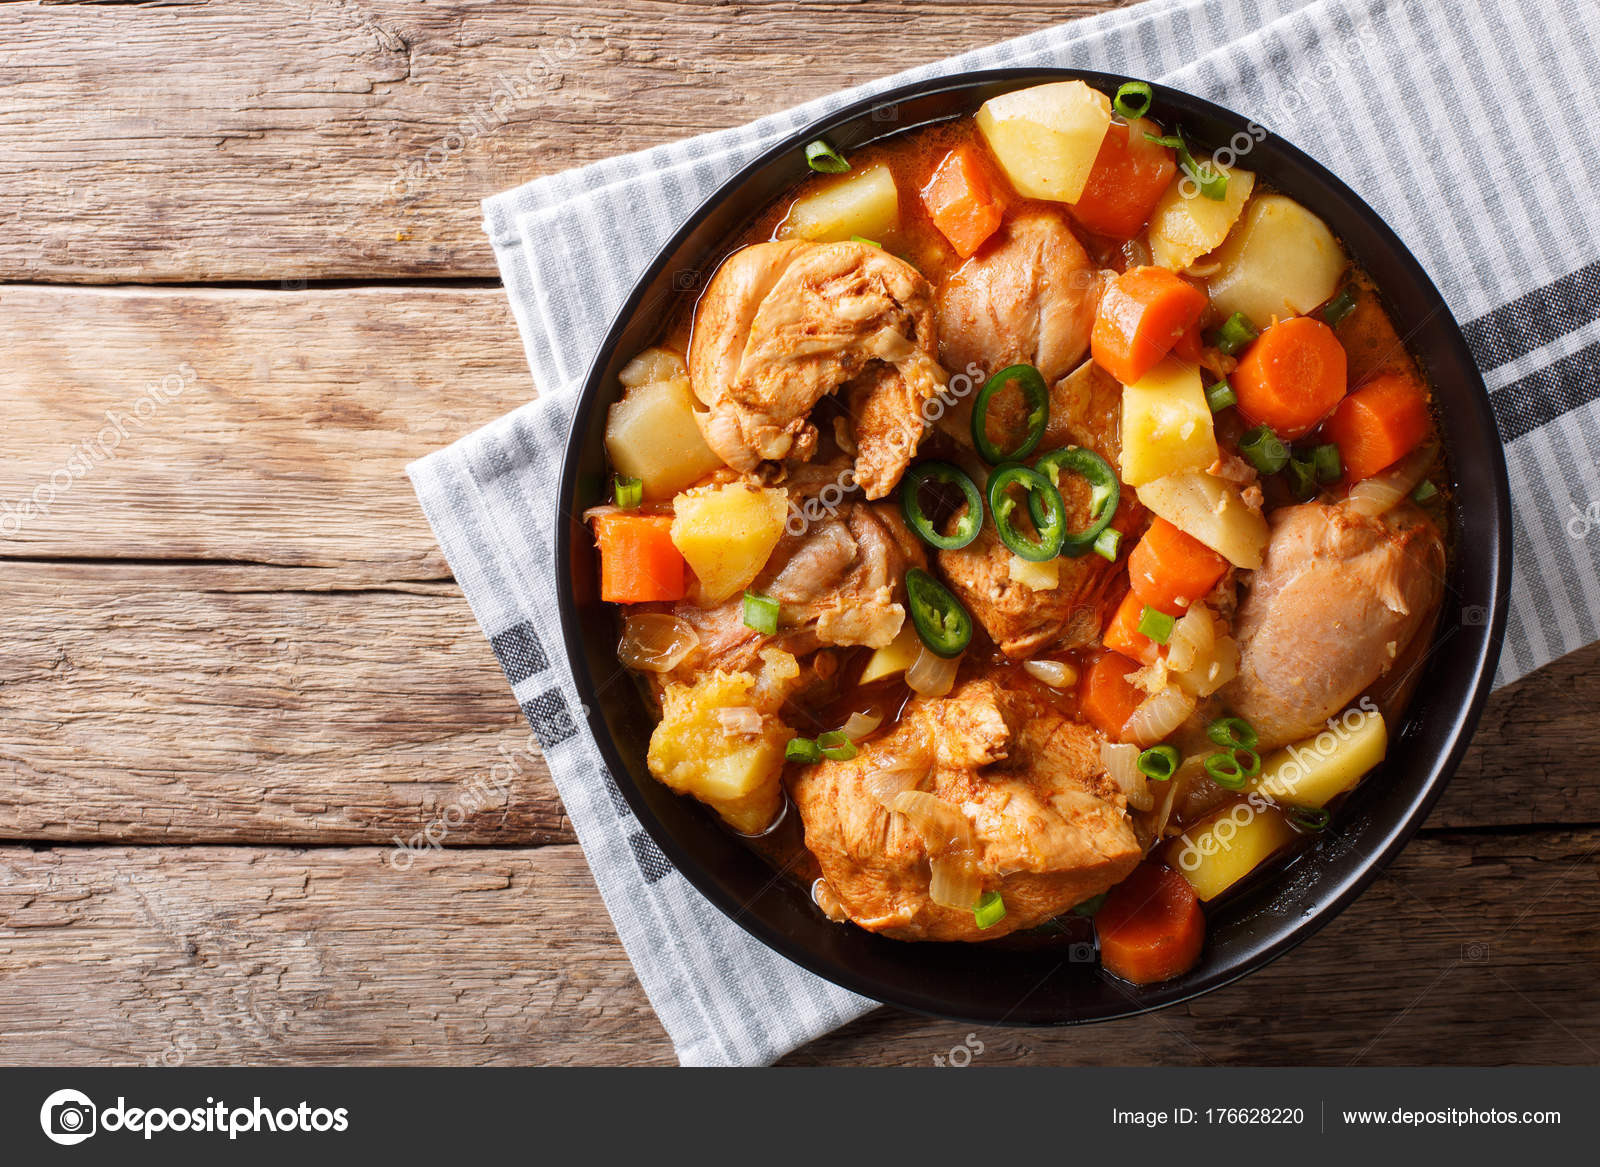 Рагу из свинины с картошкой и капустой. Рагу с курицей. Рагу с мясом и картошкой. Картофельное рагу с мясом. Курица с овощами на сковороде.